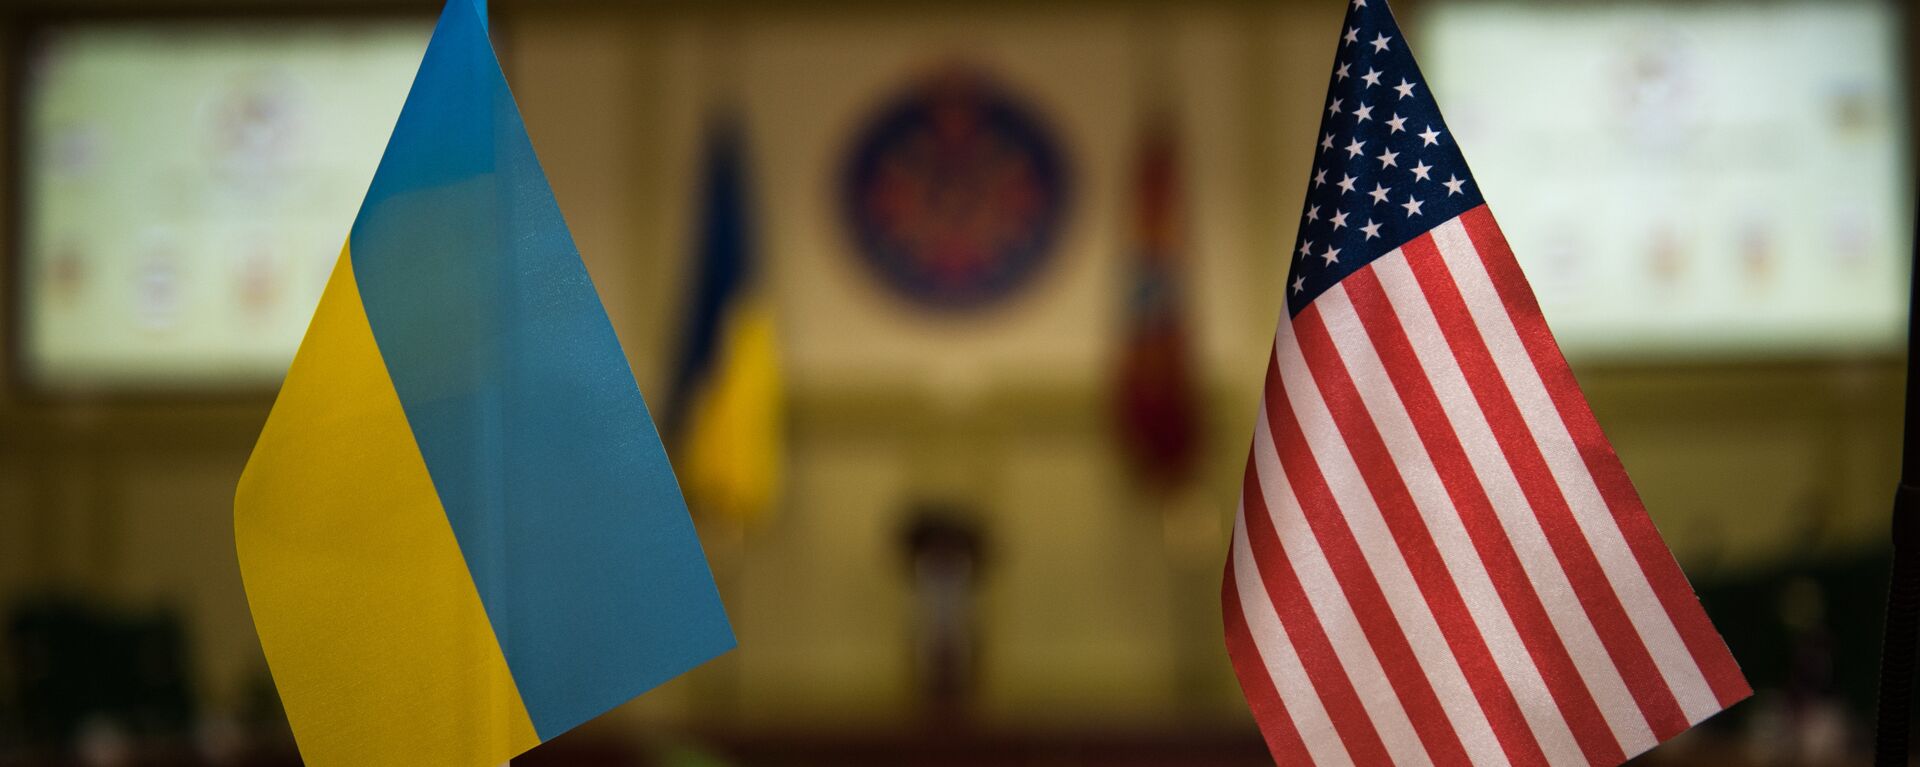 Banderas Ucrania y EEUU - Sputnik Mundo, 1920, 28.12.2021